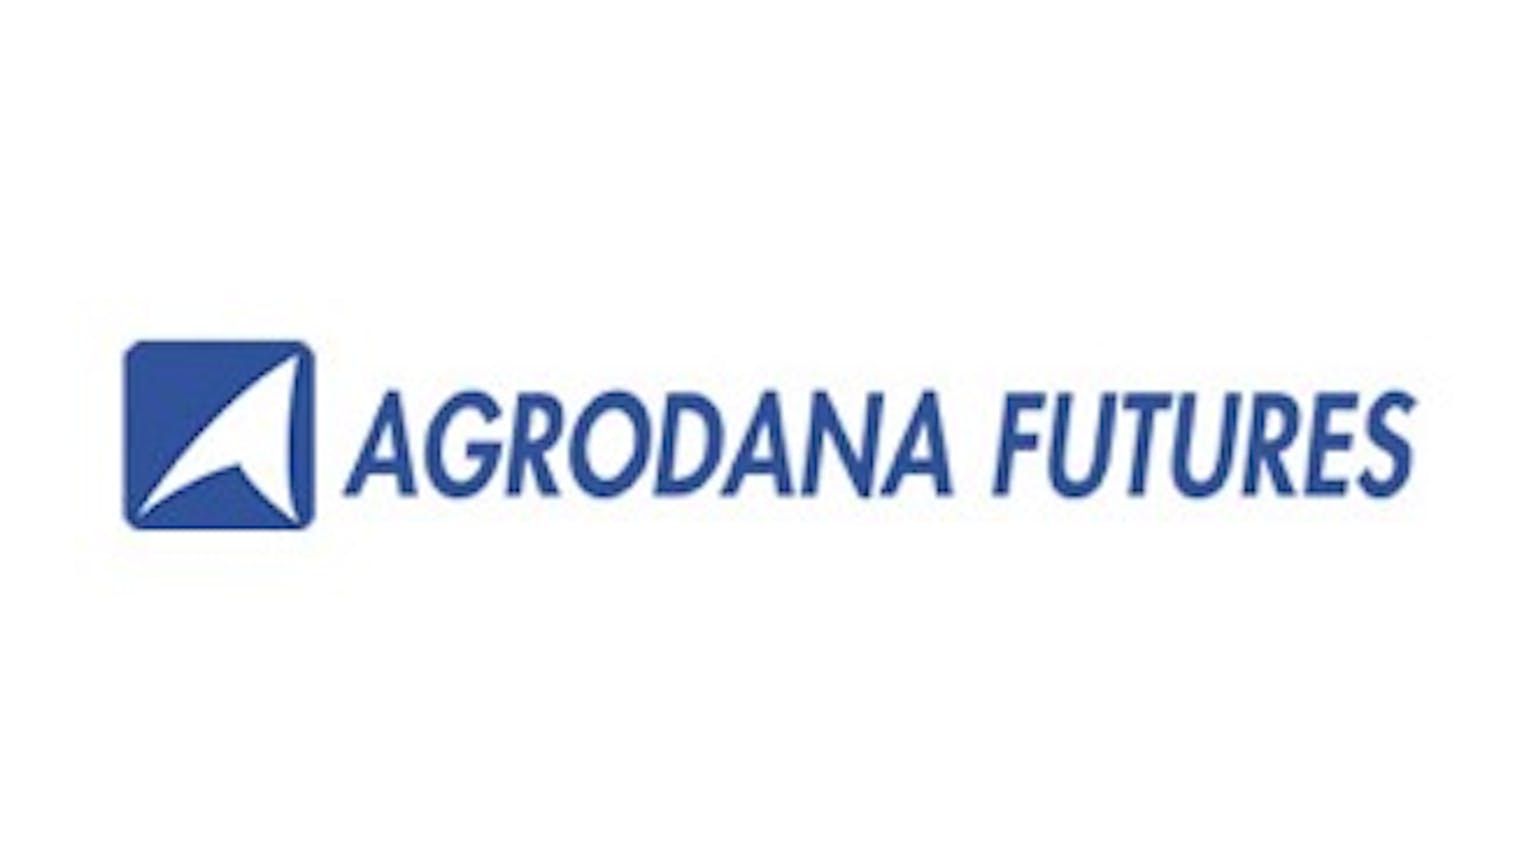 Agrodana Futures